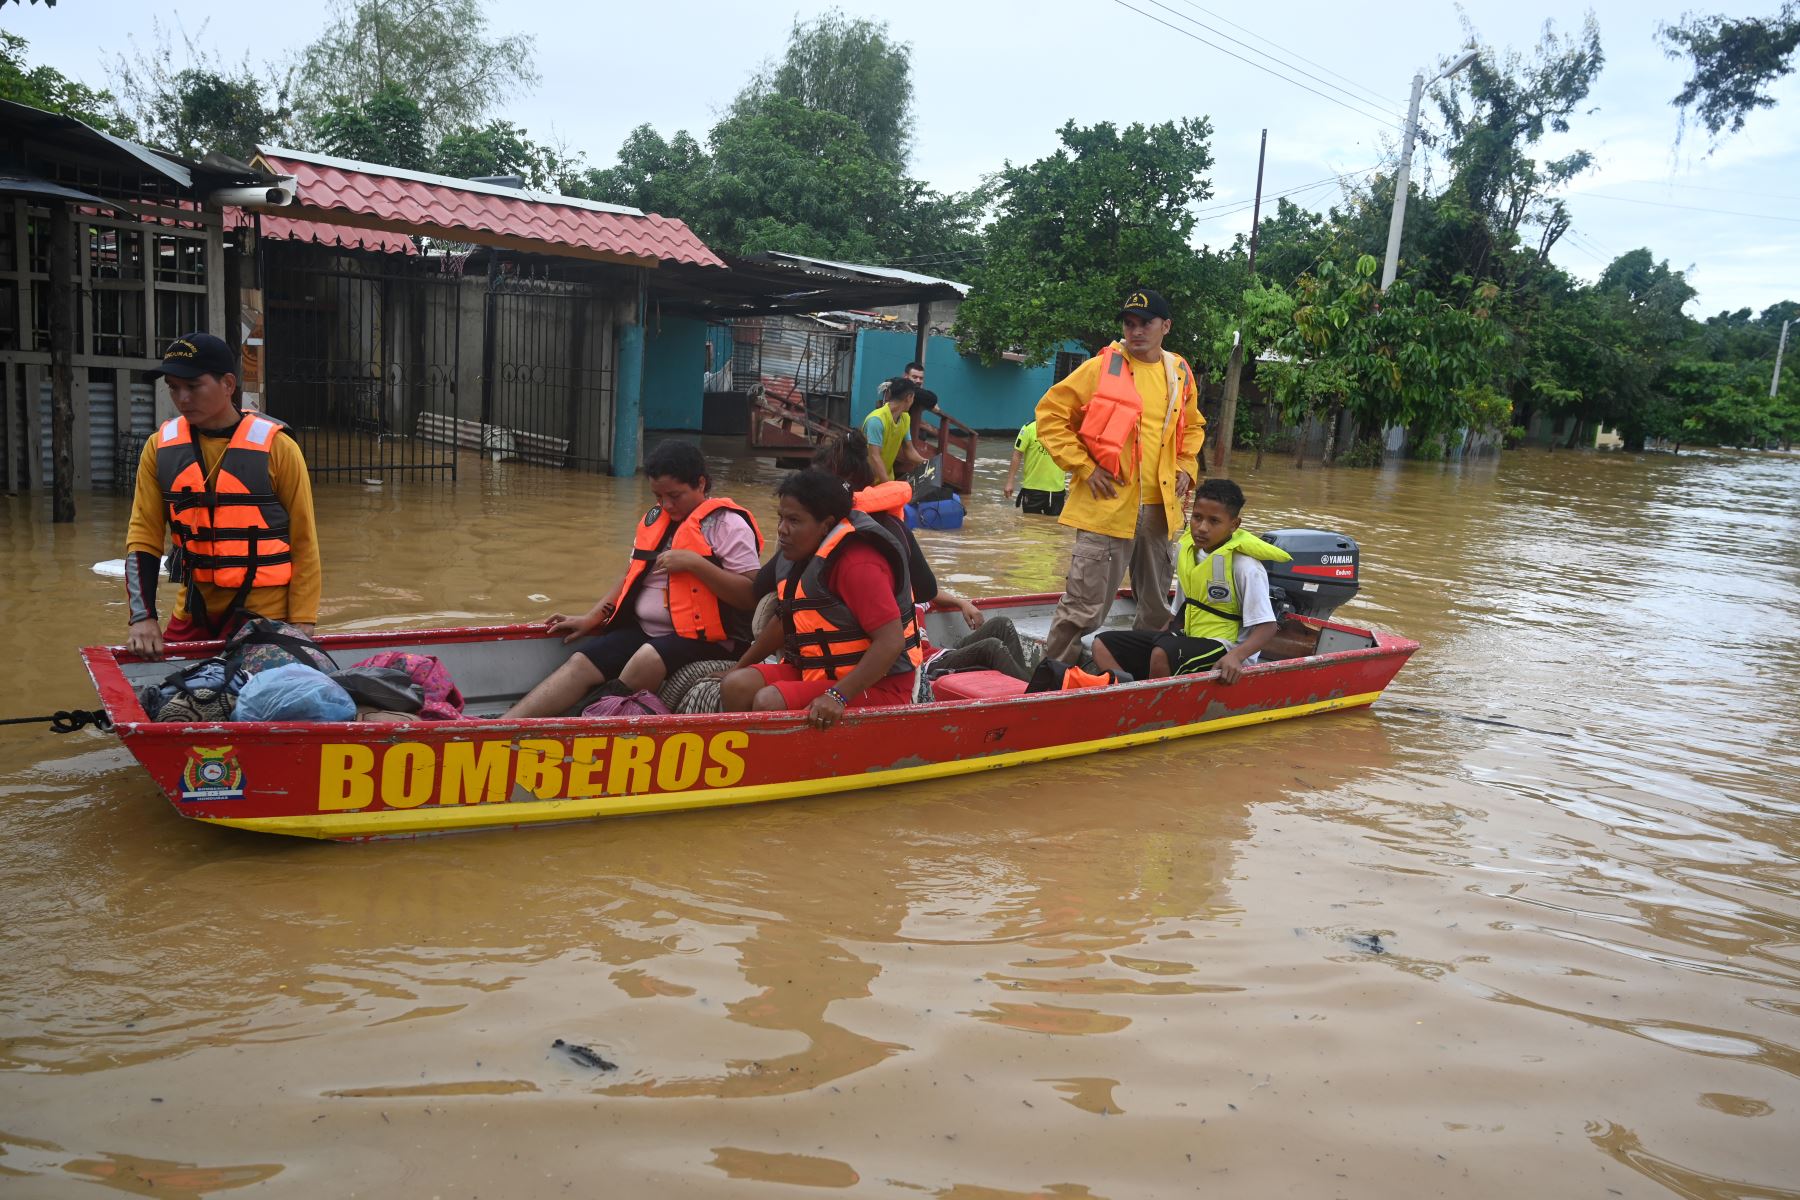 Bomberos rescatan a pobladores locales luego del desborde del río Ulúa en el municipio de El Progreso, departamento de Yoro, Honduras  debido a las fuertes lluvias provocadas por el huracán Eta.
Foto: AFP